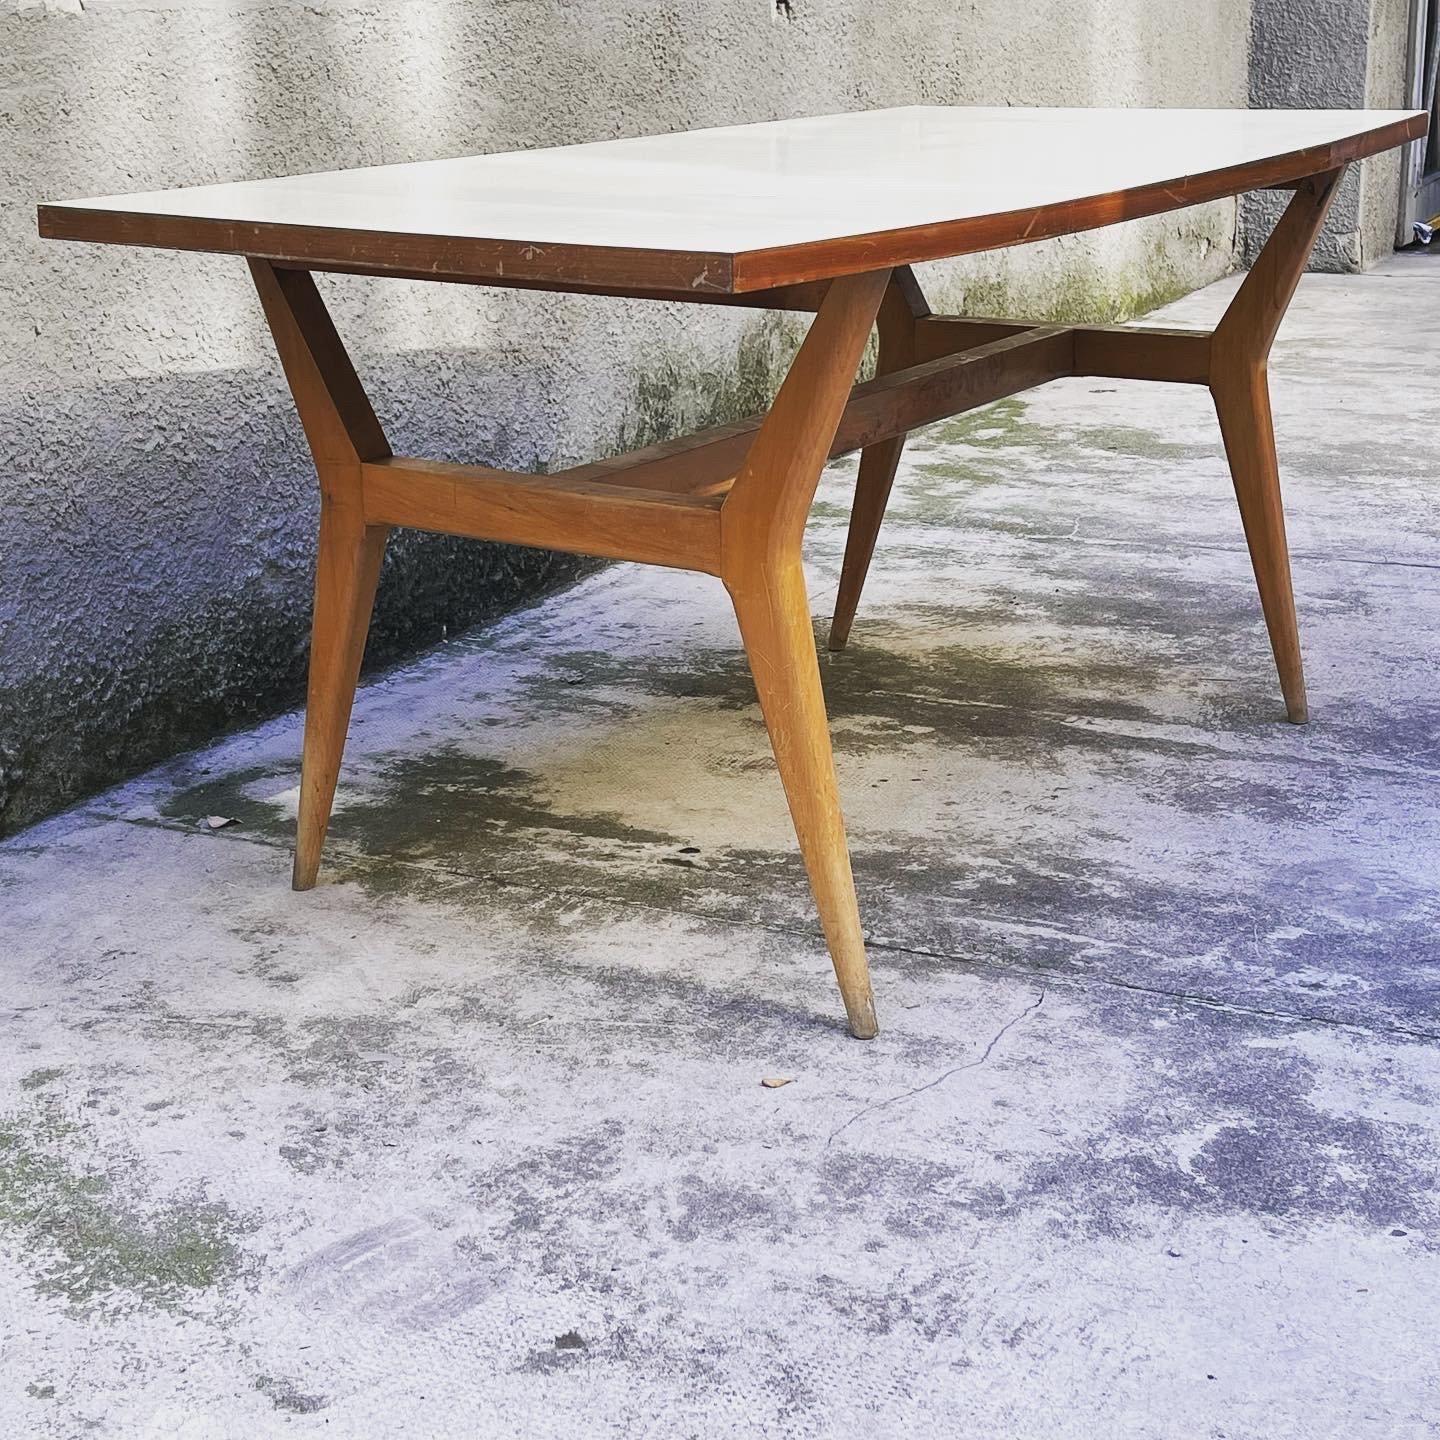 
Schöner Esstisch aus Holz, hergestellt in Italien im Jahr 1950. Der Esstisch aus Holz hat eine schöne rechteckige Platte, die Beine sind leicht nach außen gebogen. Die Platte des Esstisches ist mit einem hellen Laminat in einem klassischen und